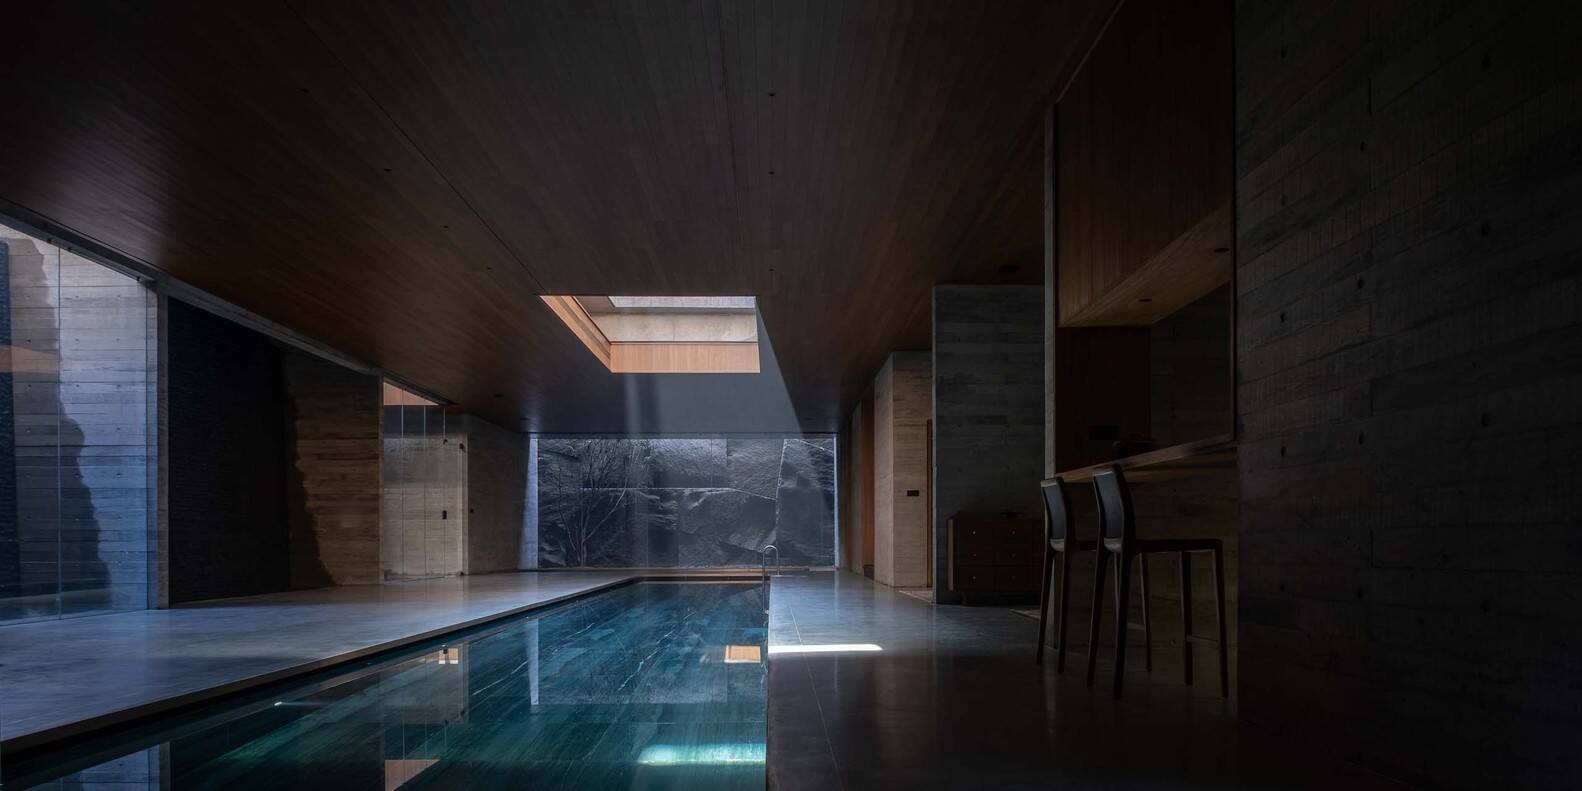 
Bể bơi nước nóng được đặt dưới tầng hầm, cùng với cách bố trí, sắp xếp không gian ánh sáng đẹp đẽ, độc đáo, đẹp mê ly
